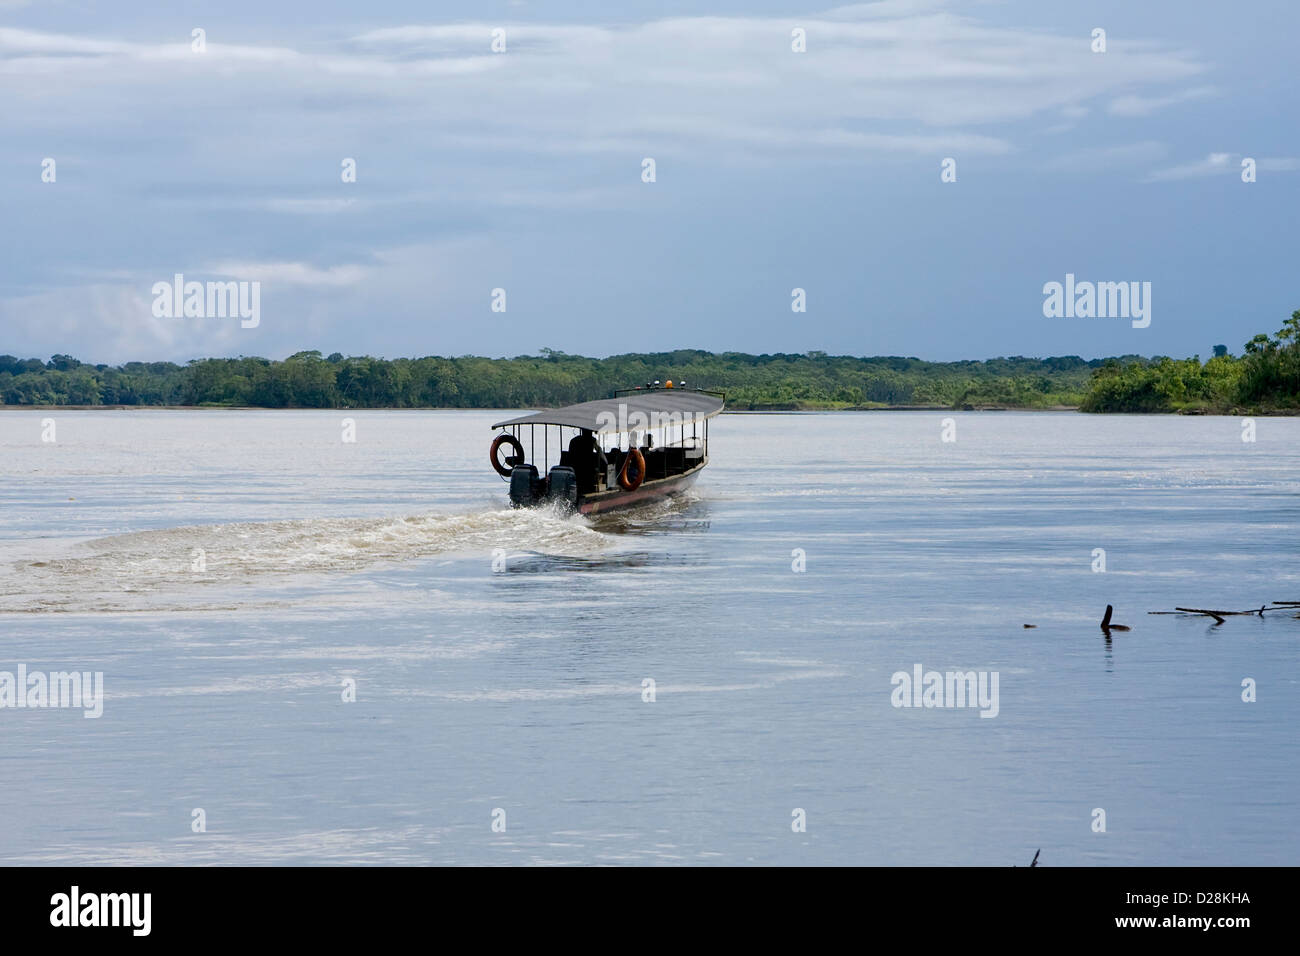 Boating on the Rio Napo River, Ecuadorian Amazon Stock Photo